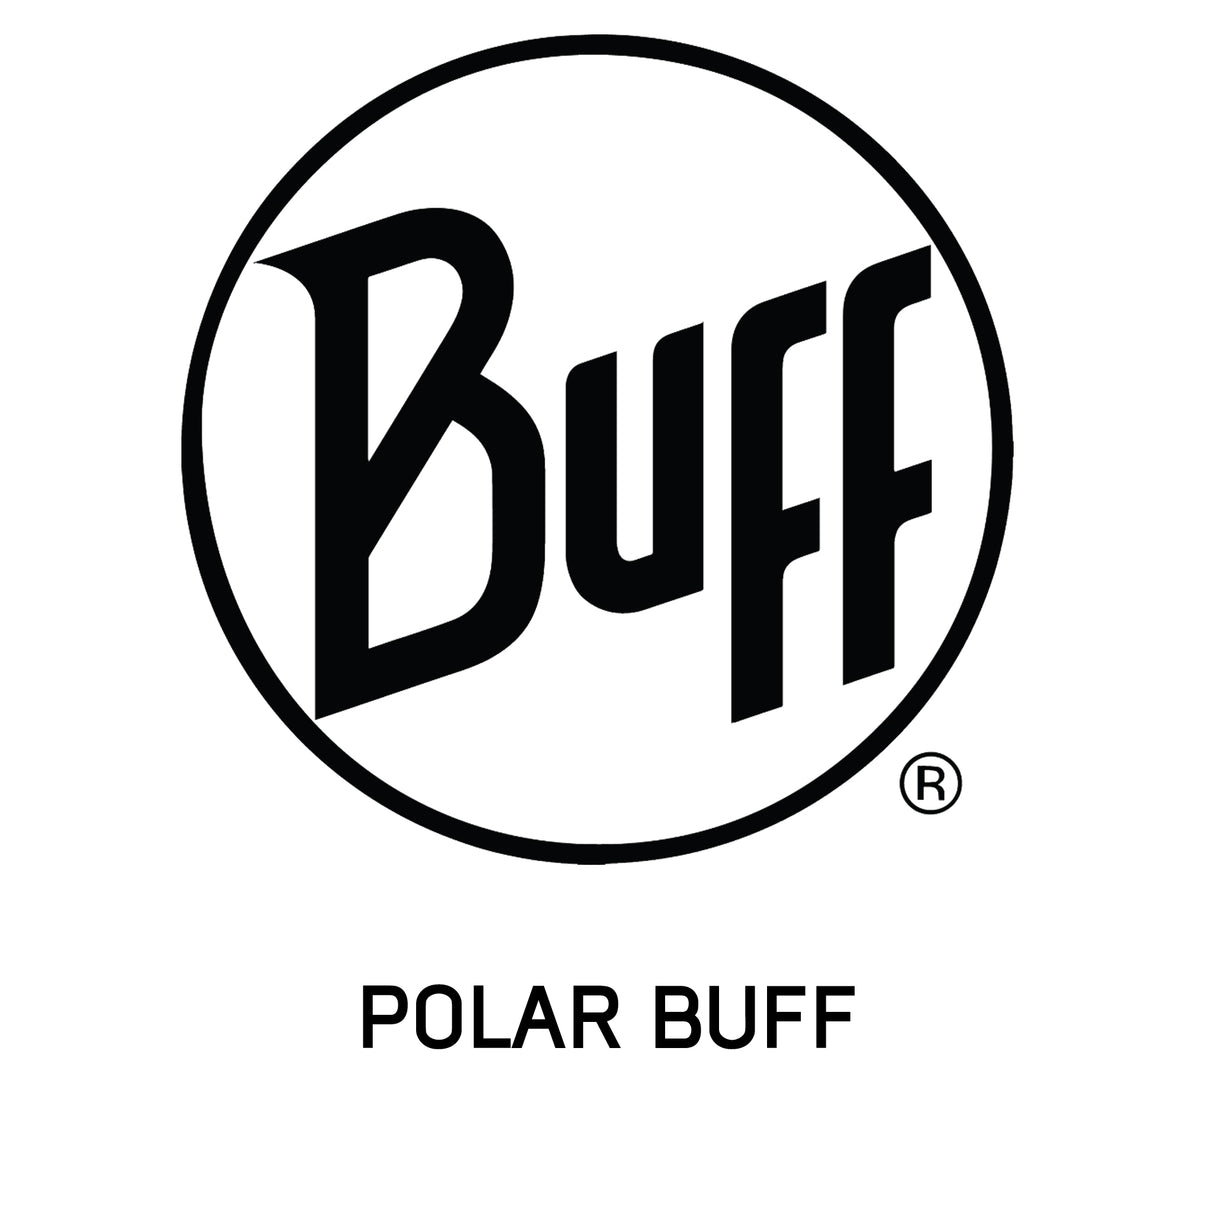 Polar Buff